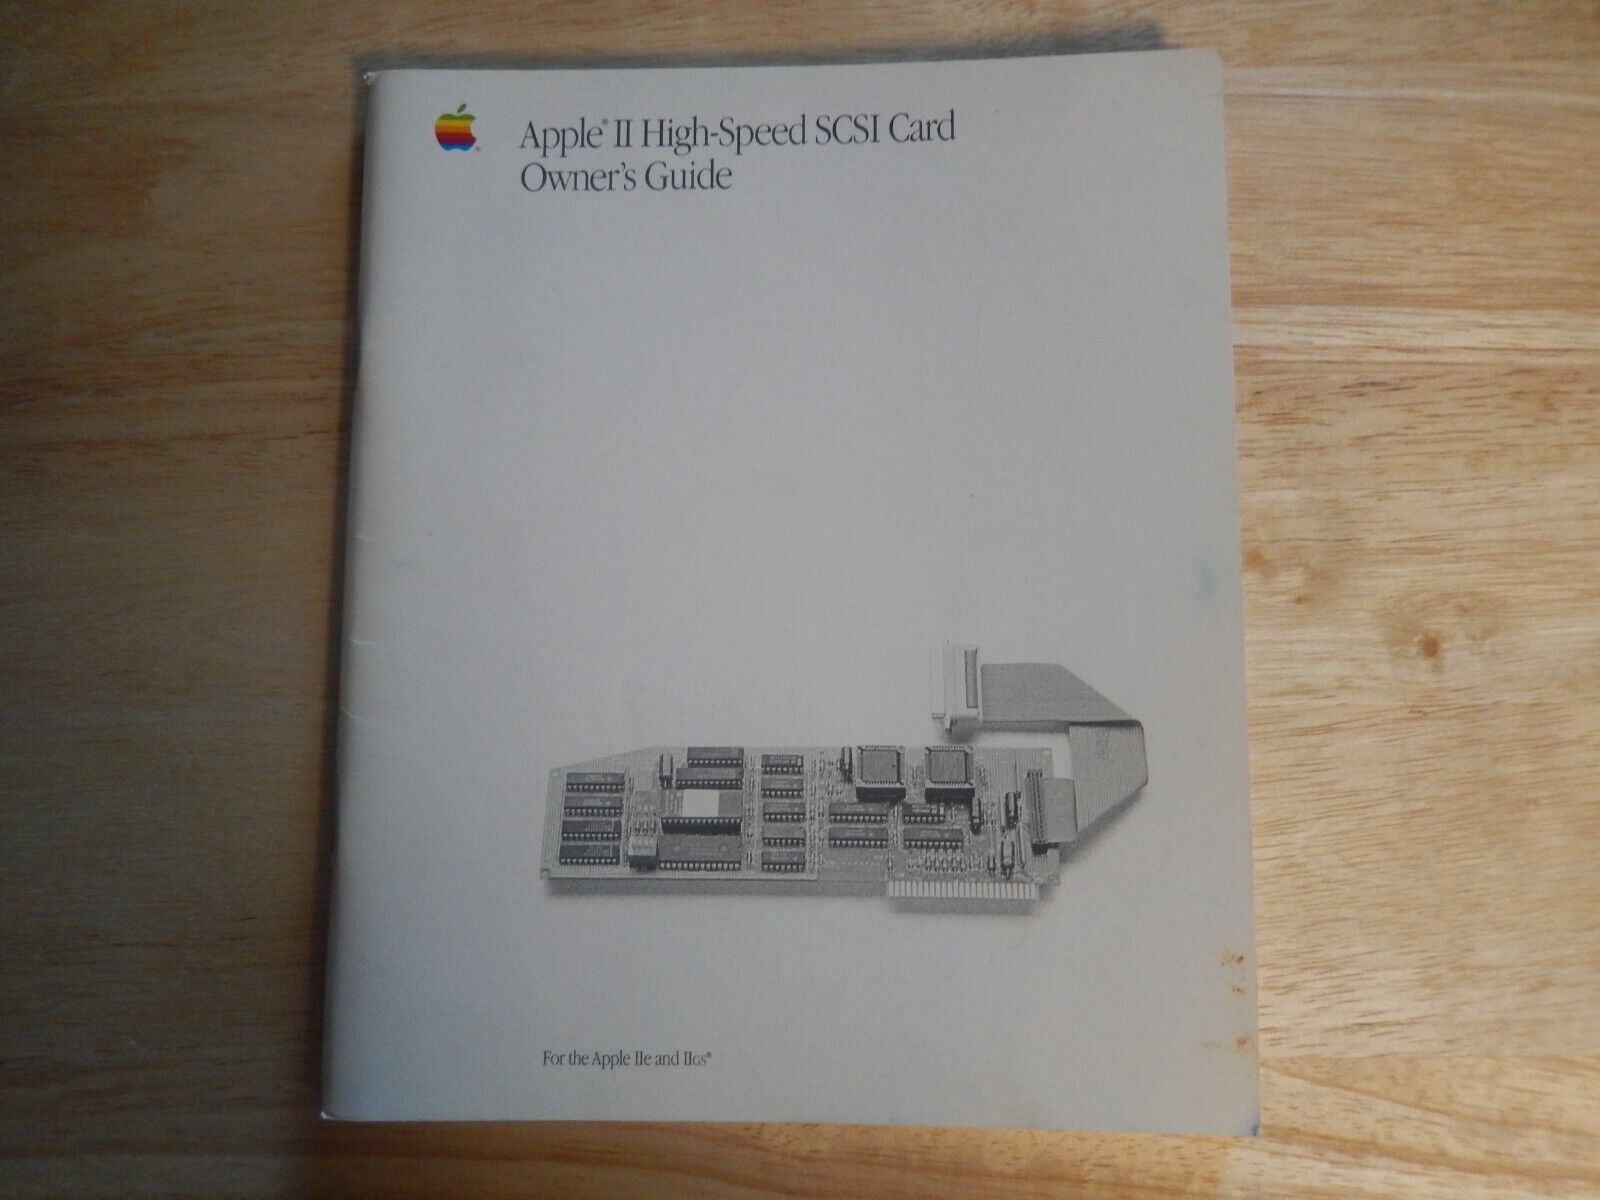 VINTAGE APPLE IIe & IIGS HIGH-SPEED SCSI CARD OWNER'S GUIDE, #030-3051-B,  1990